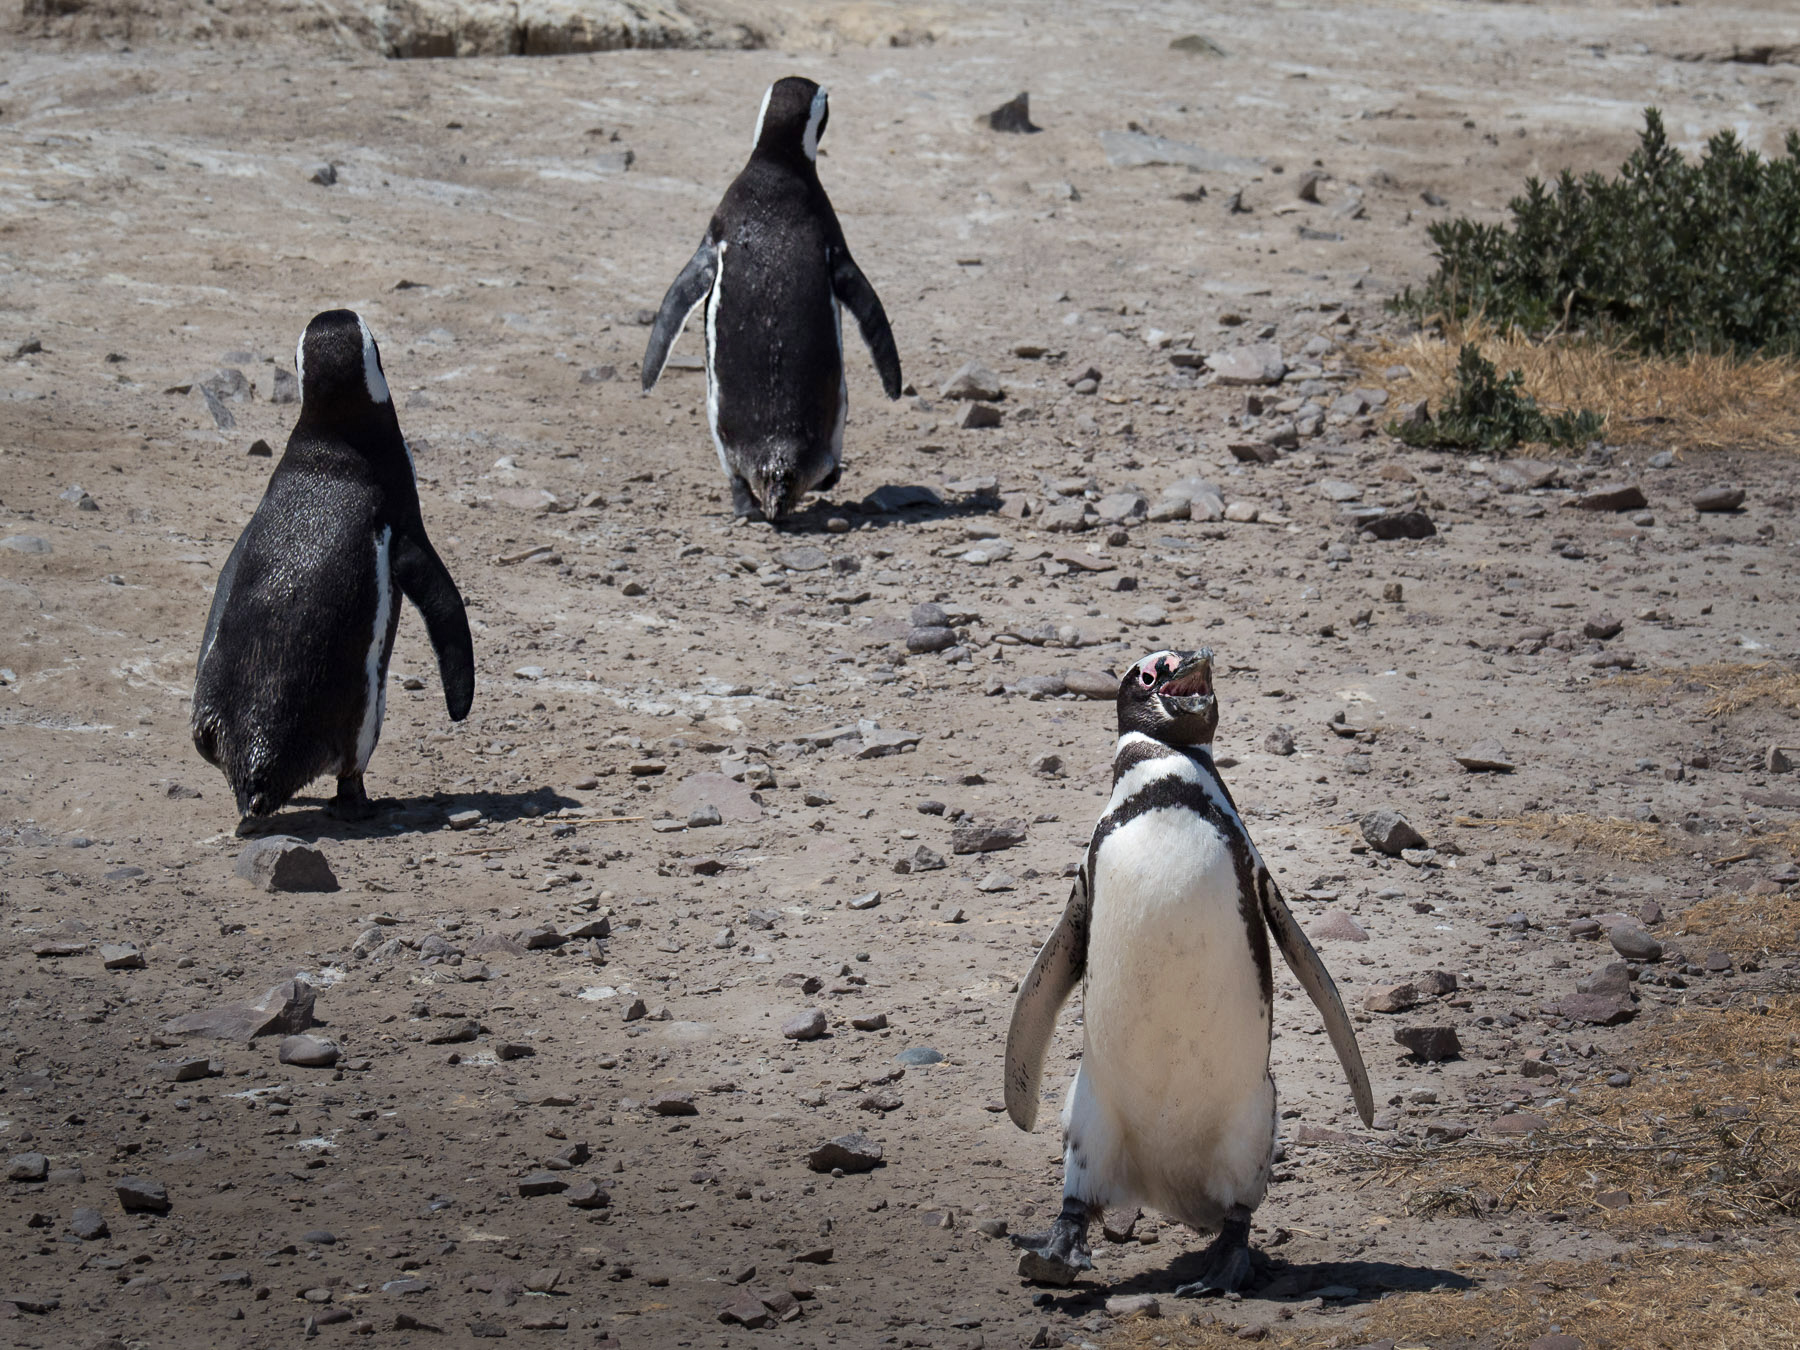 Pinguin Autobahn. Ein stetiges Kommen und Gehen zwischen Strand und Bruthöhlen